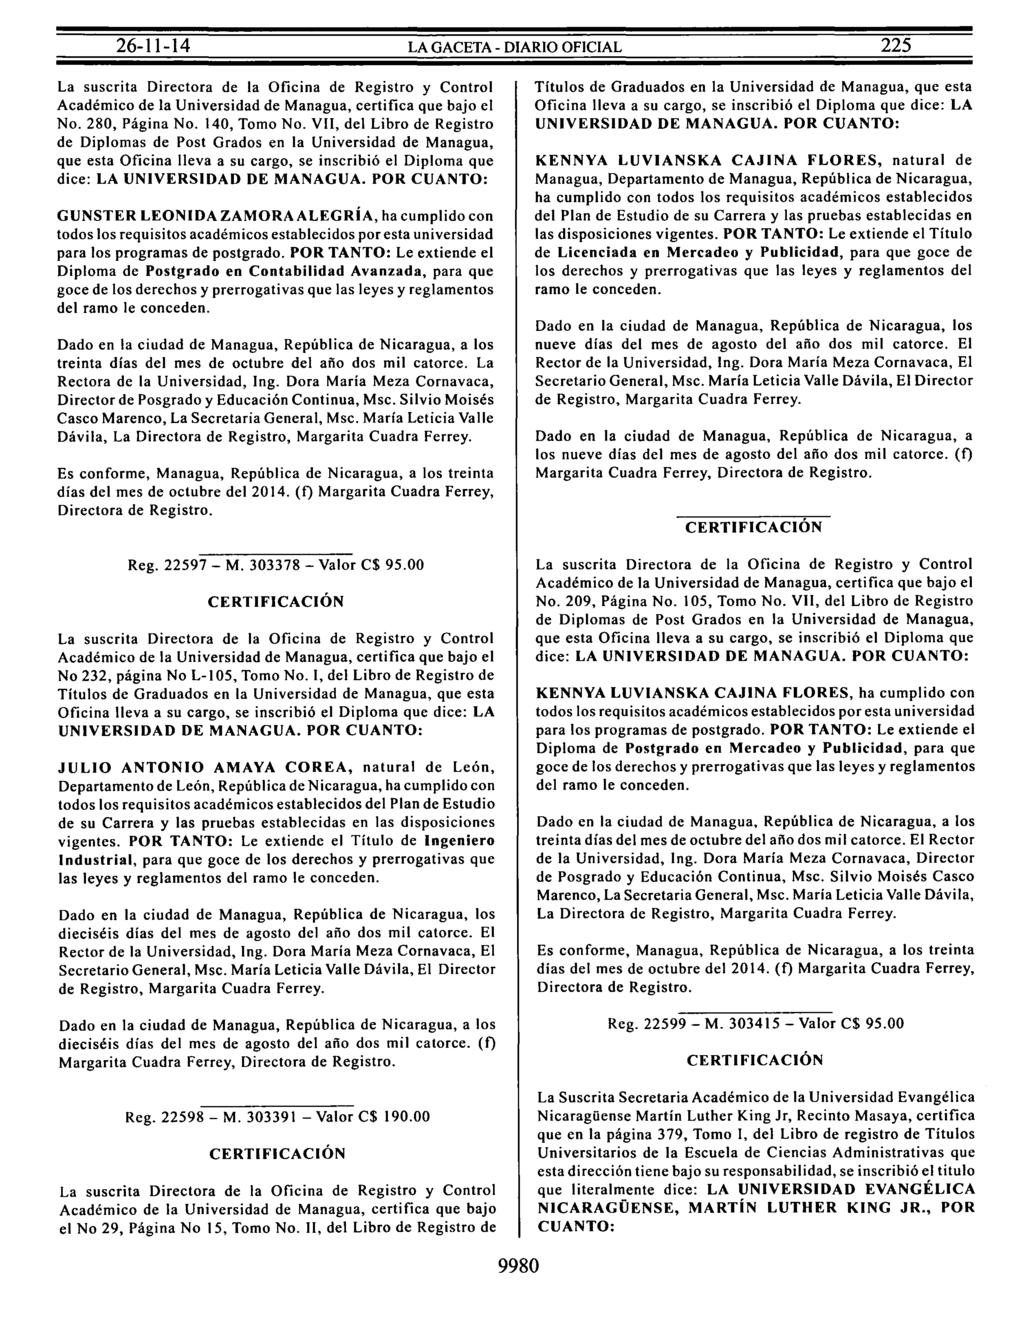 La suscrita Directora de la Oficina de Registro y Control Académico de la Universidad de Managua, certifica que bajo el No. 280, Página No. 140, Tomo No.